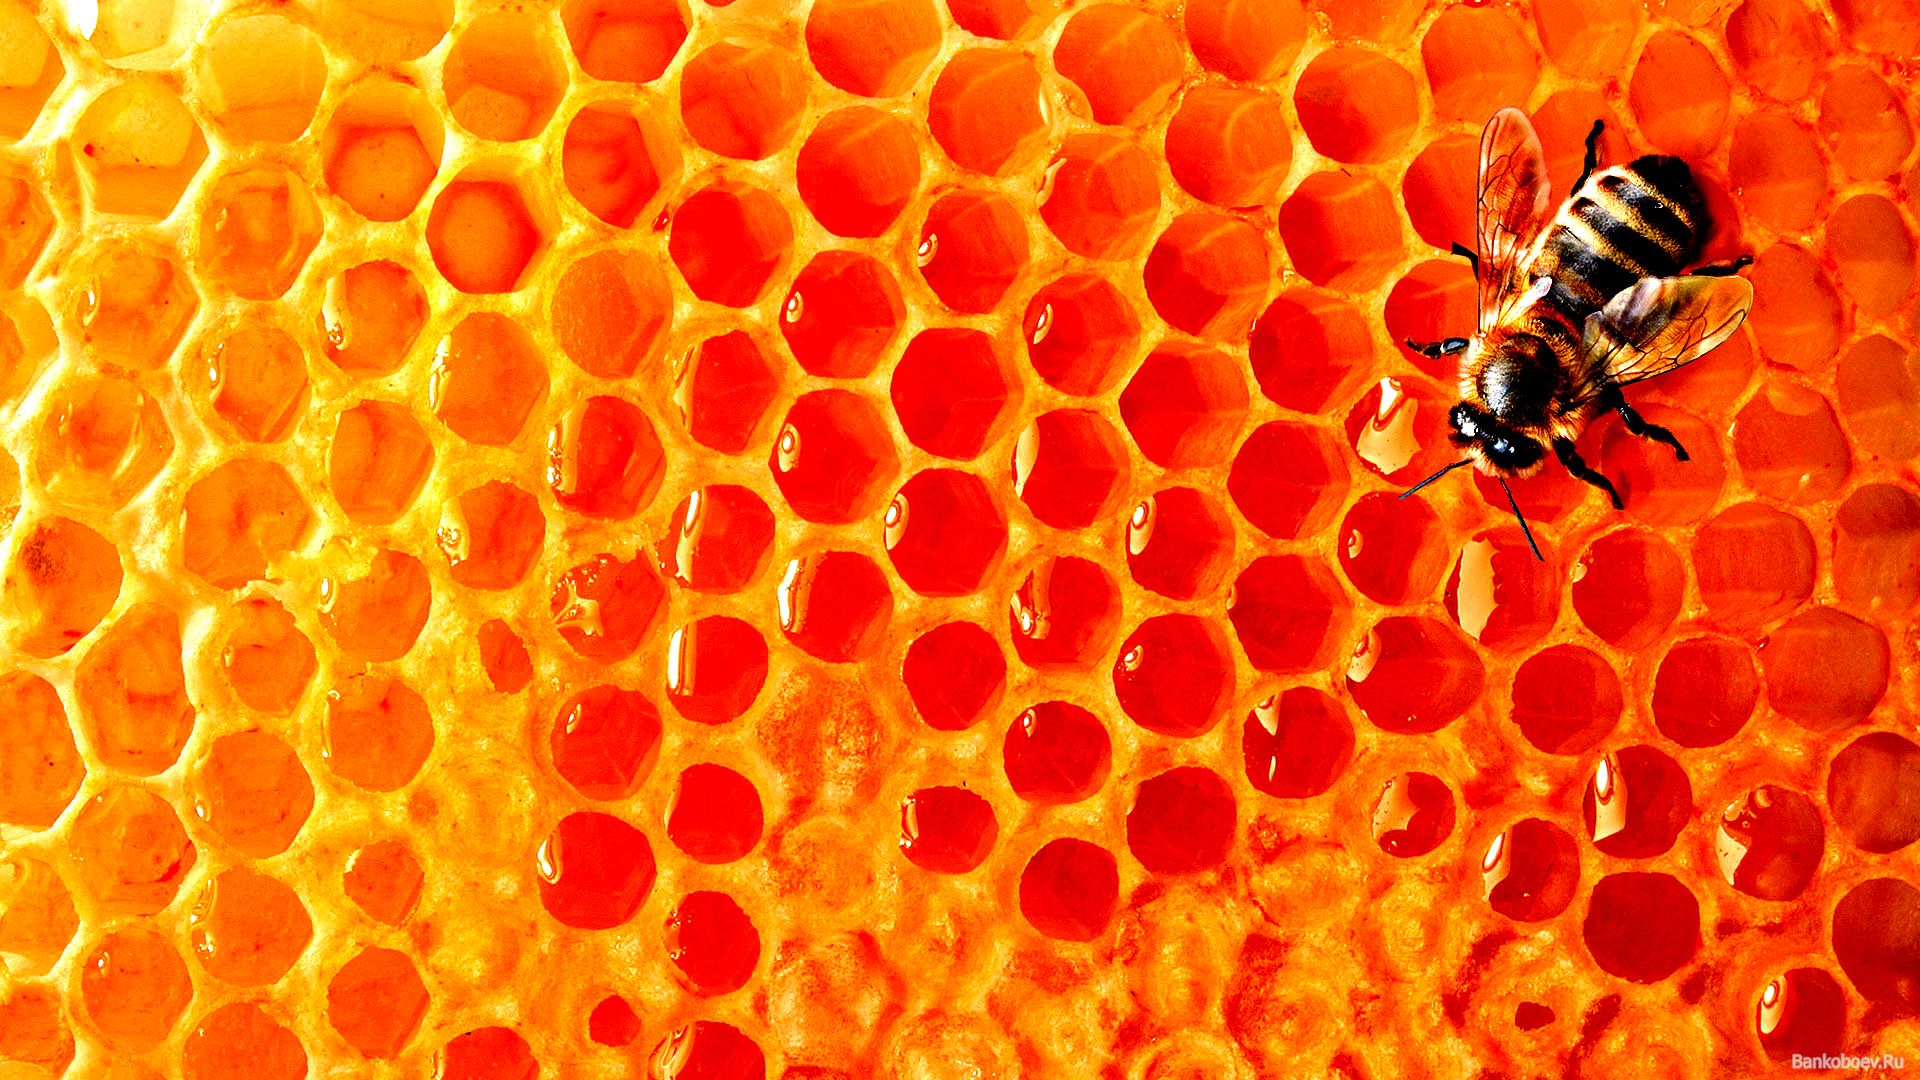 Honey Wallpaper. Honey Wallpaper, Honey Kisaragi Wallpaper and Honey & Honeycomb Wallpaper